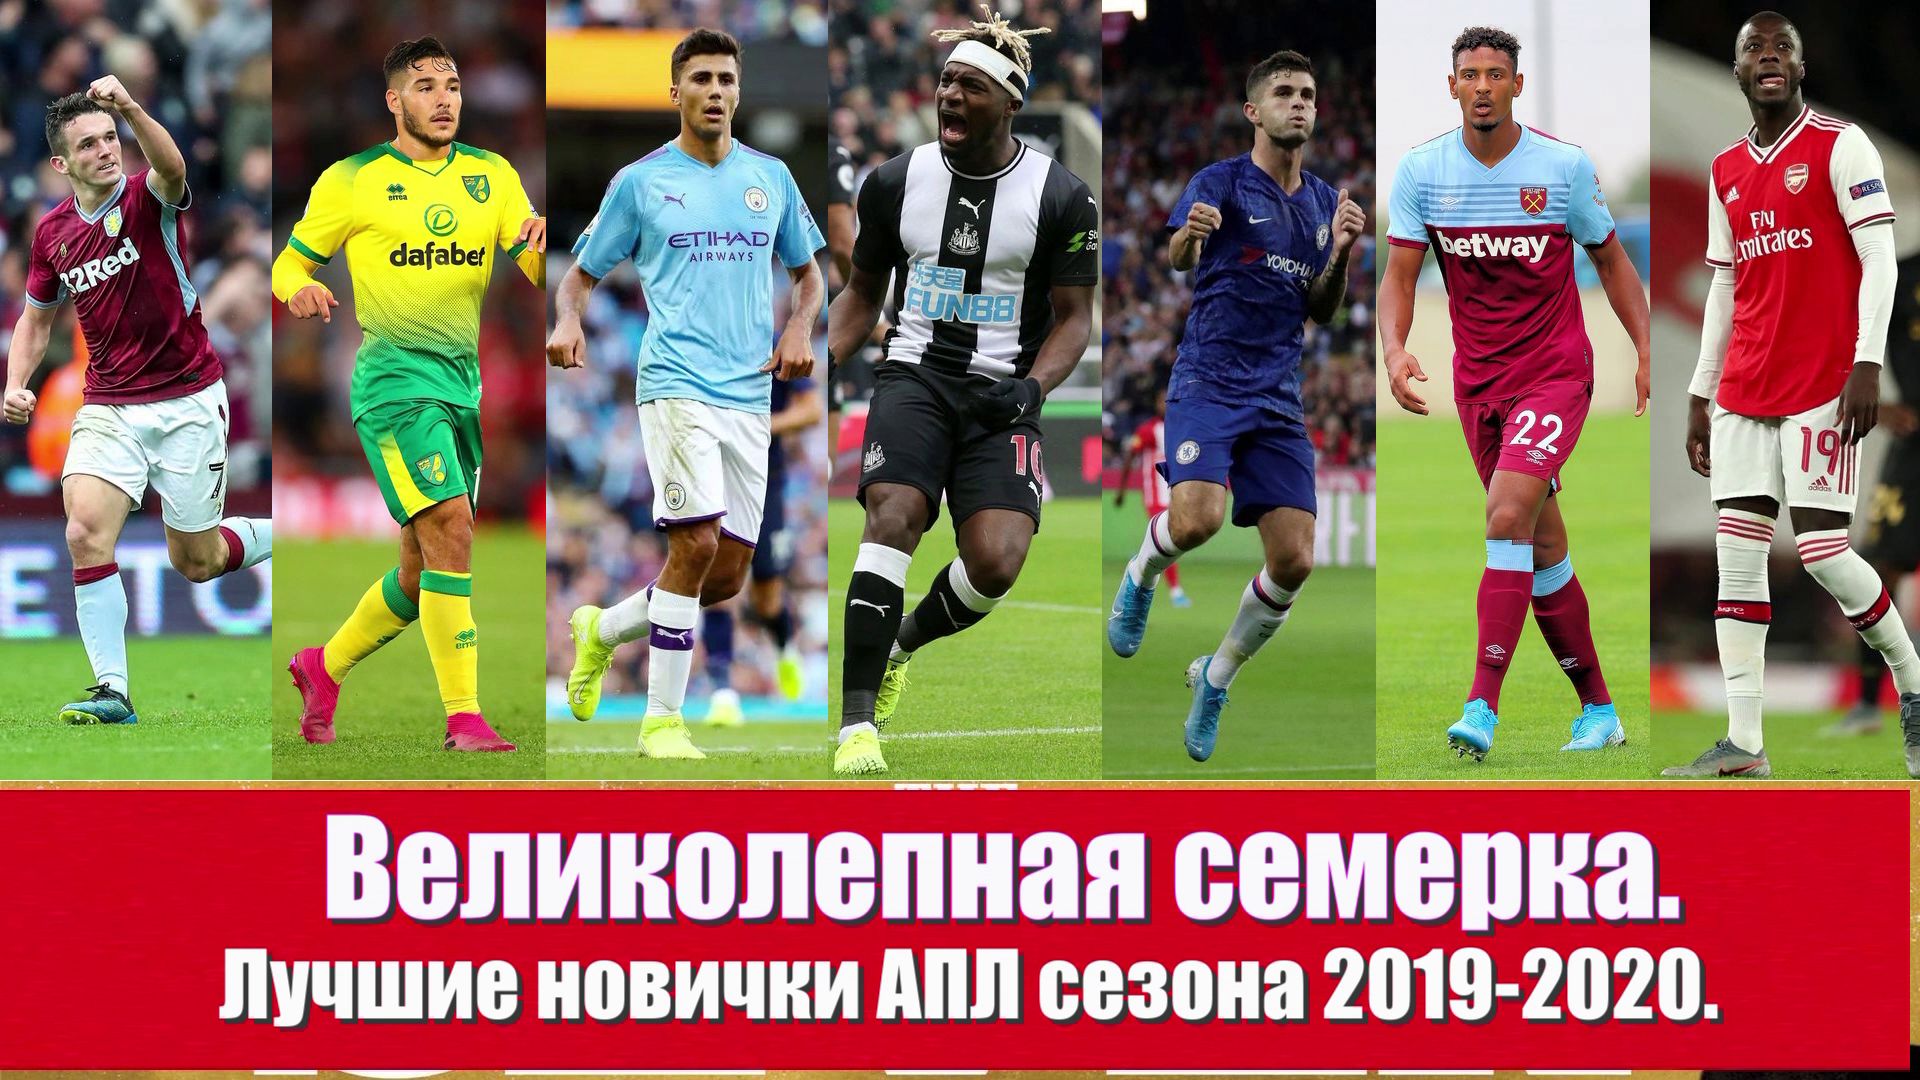 Лучшие новички АПЛ сезона 2019-2020. Великолепная семерка